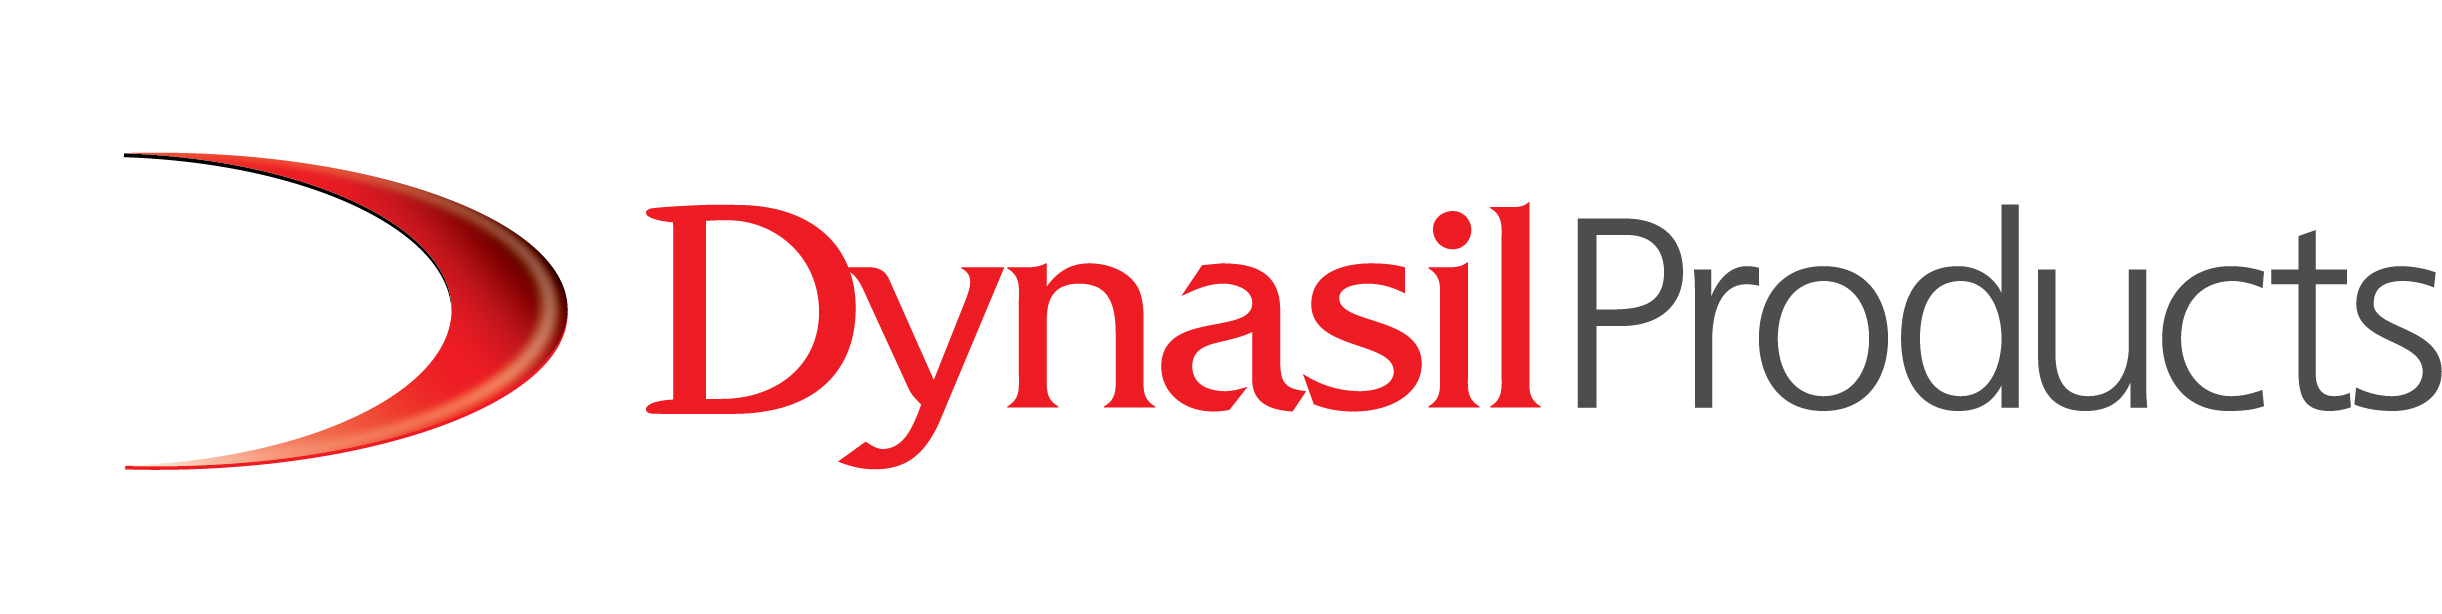 Dynasil-Products-Logo.jpg